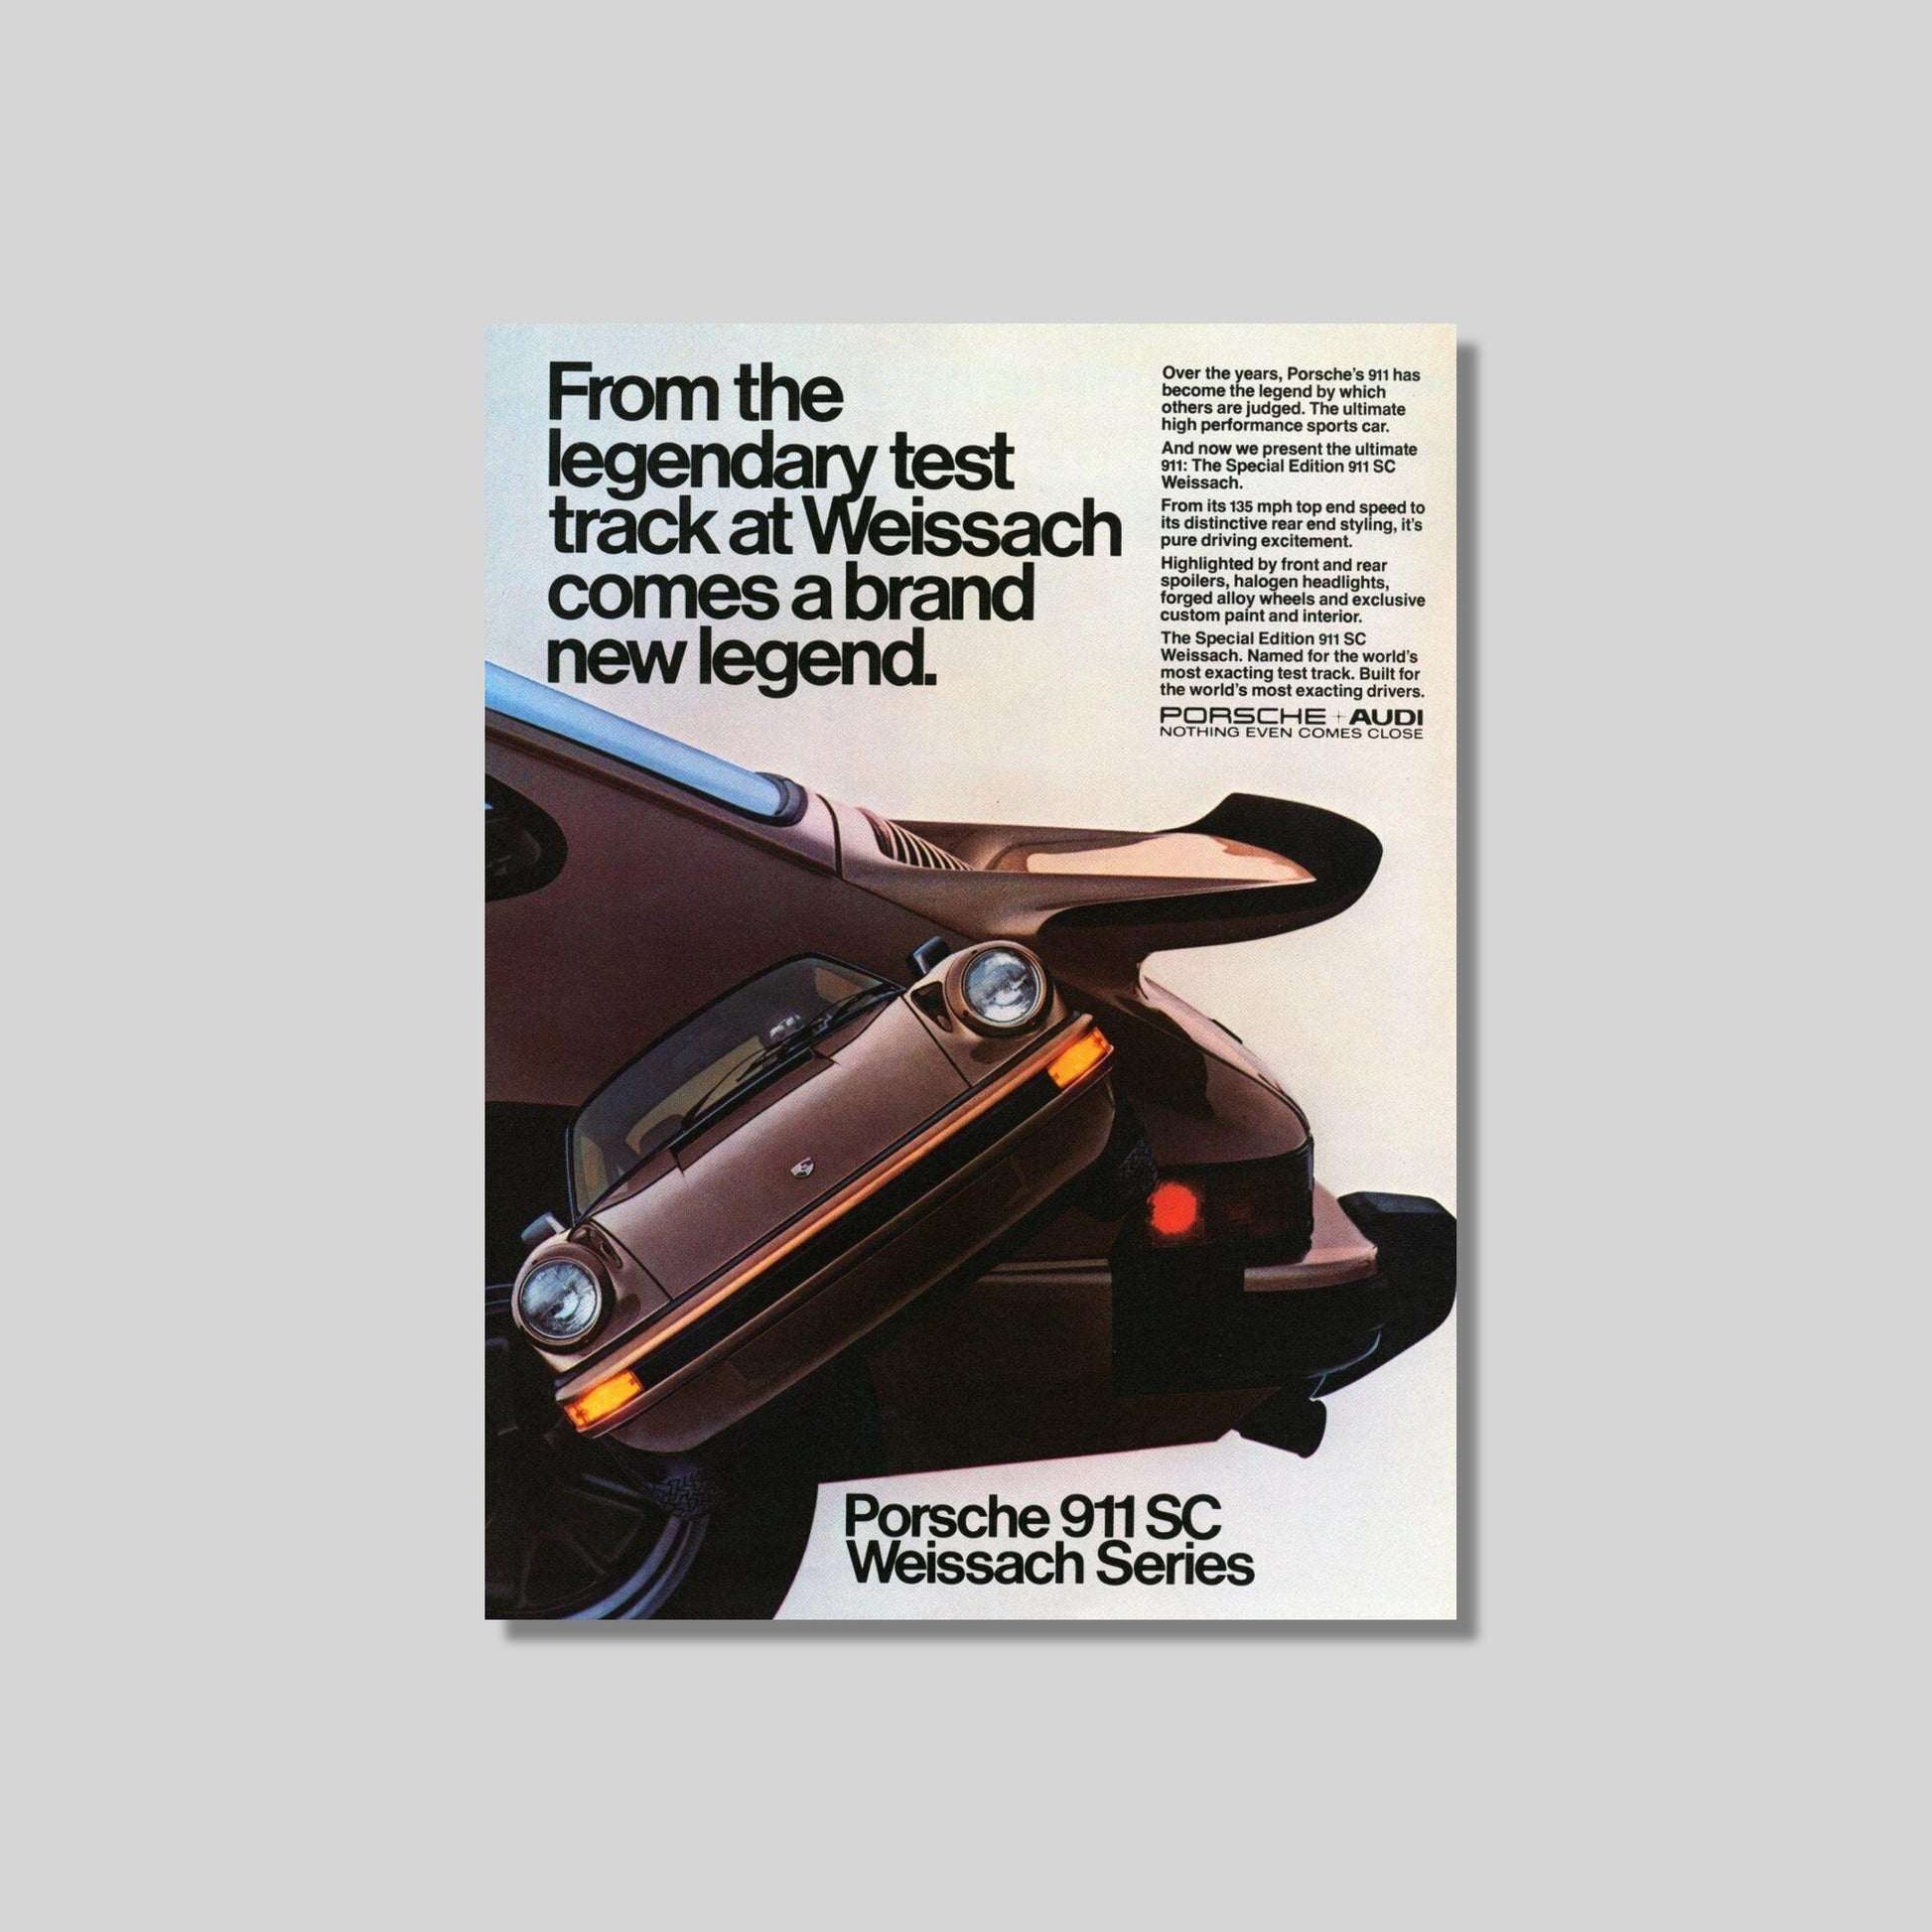 Porsche 911 SC Weissach Vintage AD poster